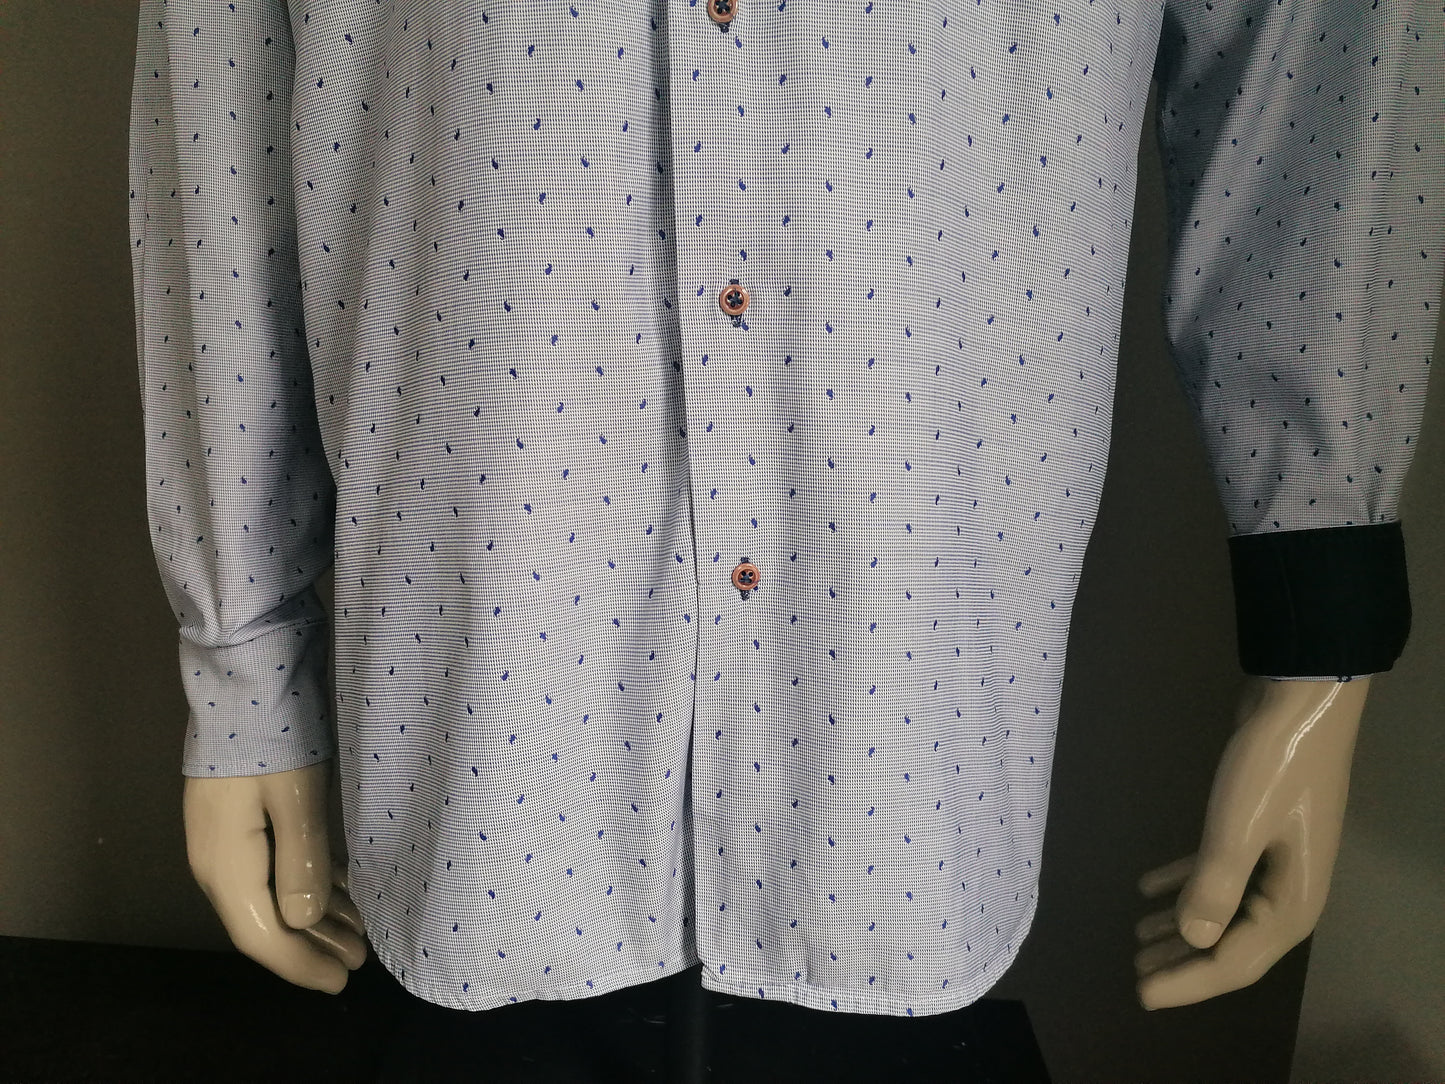 Marco Manzini shirt. Blue white print. Size XL.